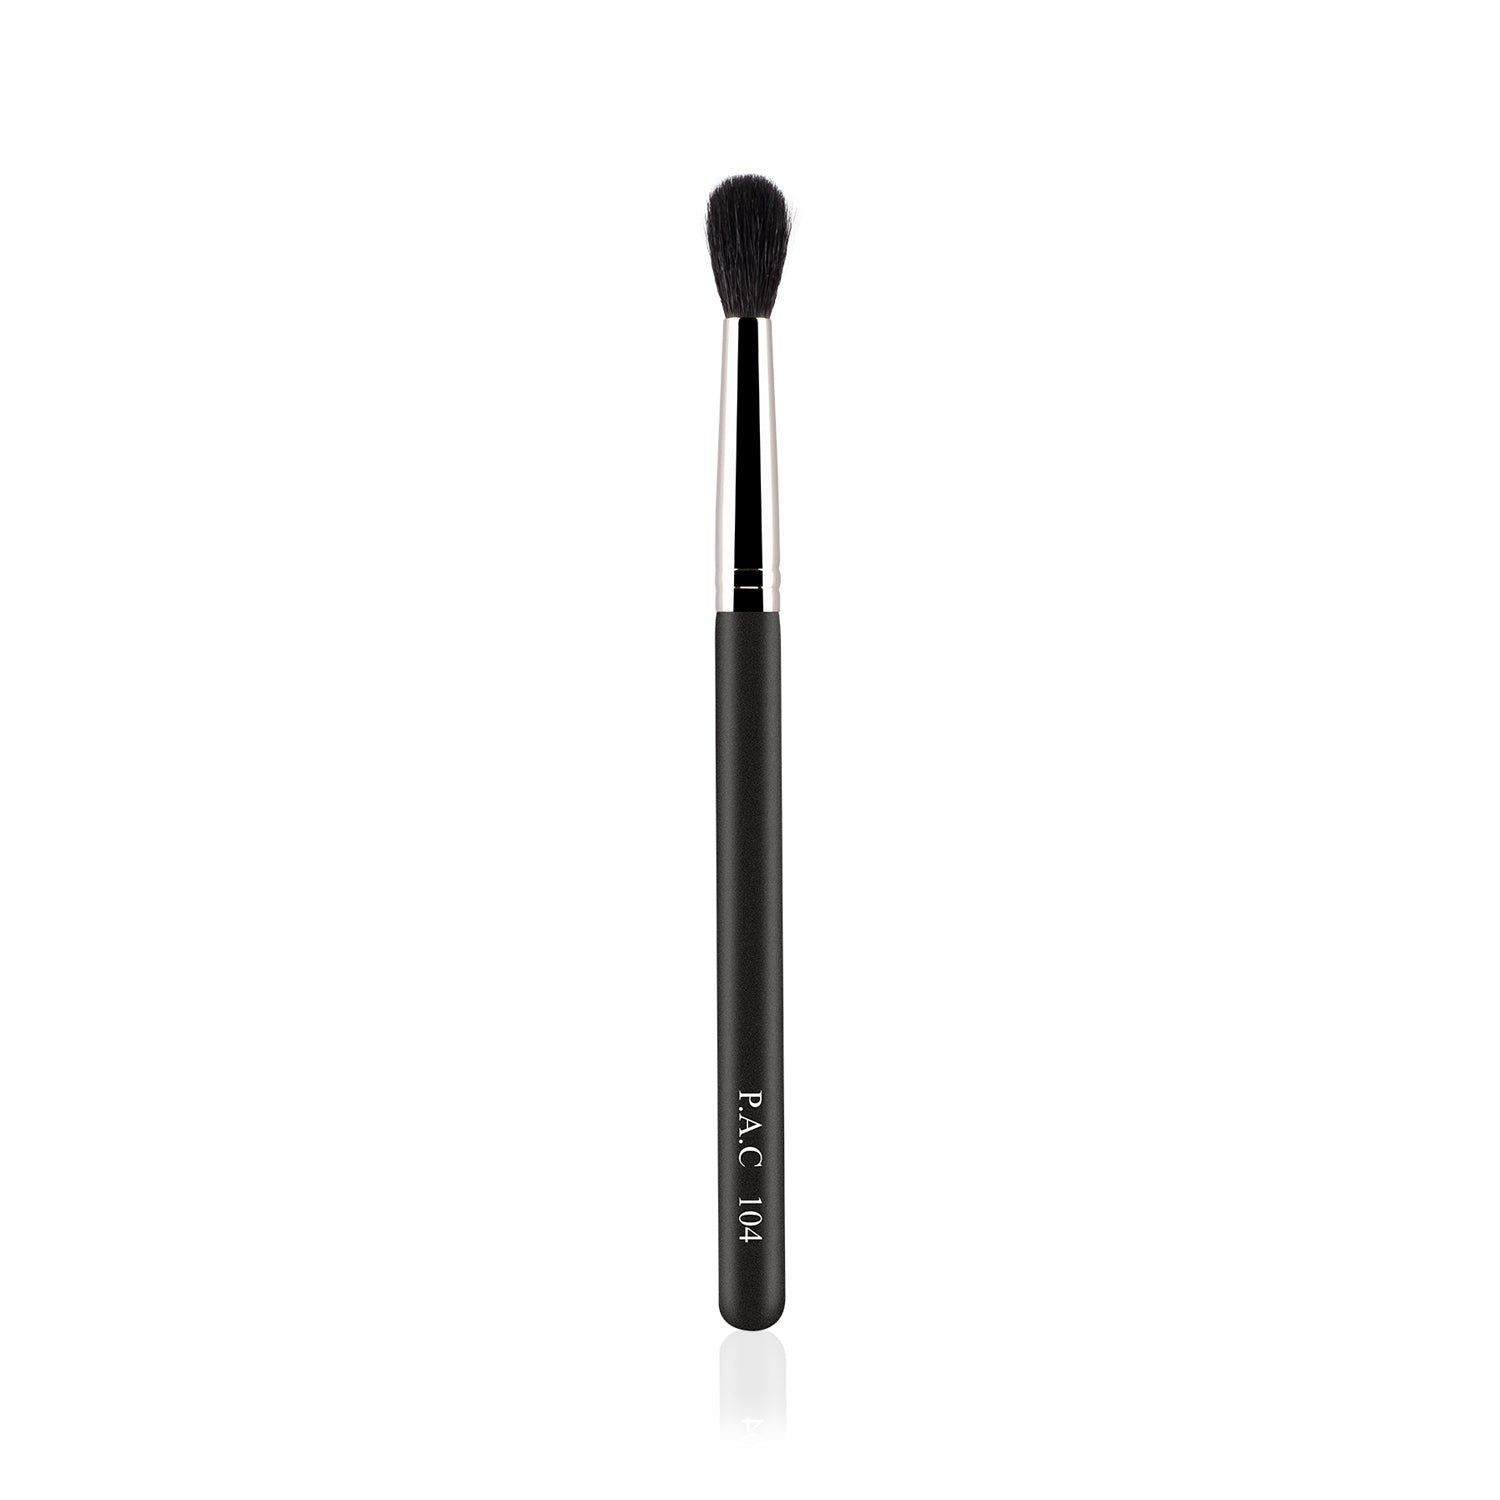 PAC Cosmetics Eyeshadow Blending Brush 104